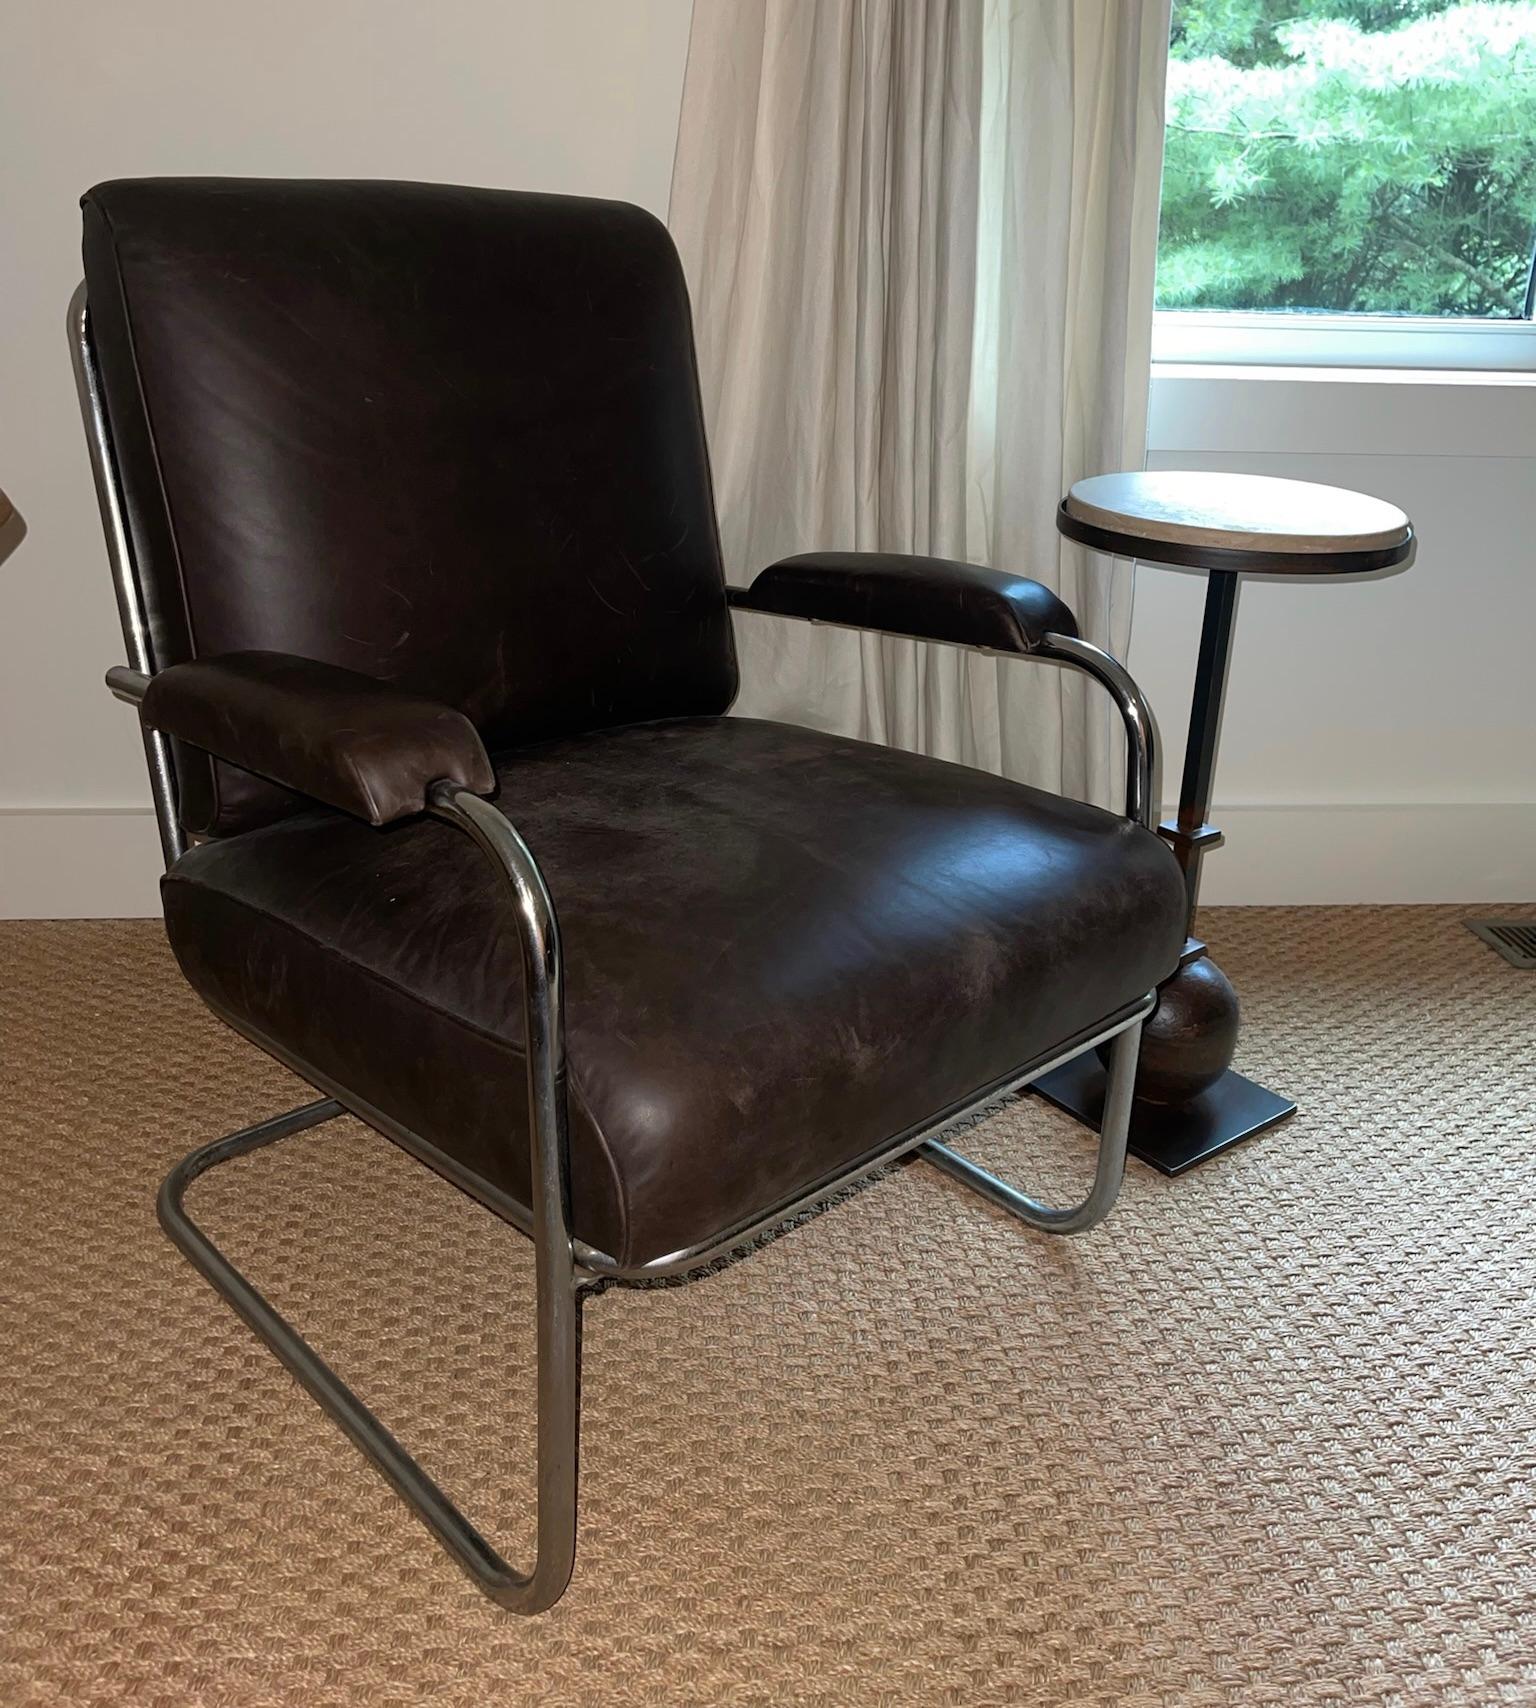 Vintage-Stuhl mit verchromtem Rohrgestell und dunkelbrauner Lederpolsterung.